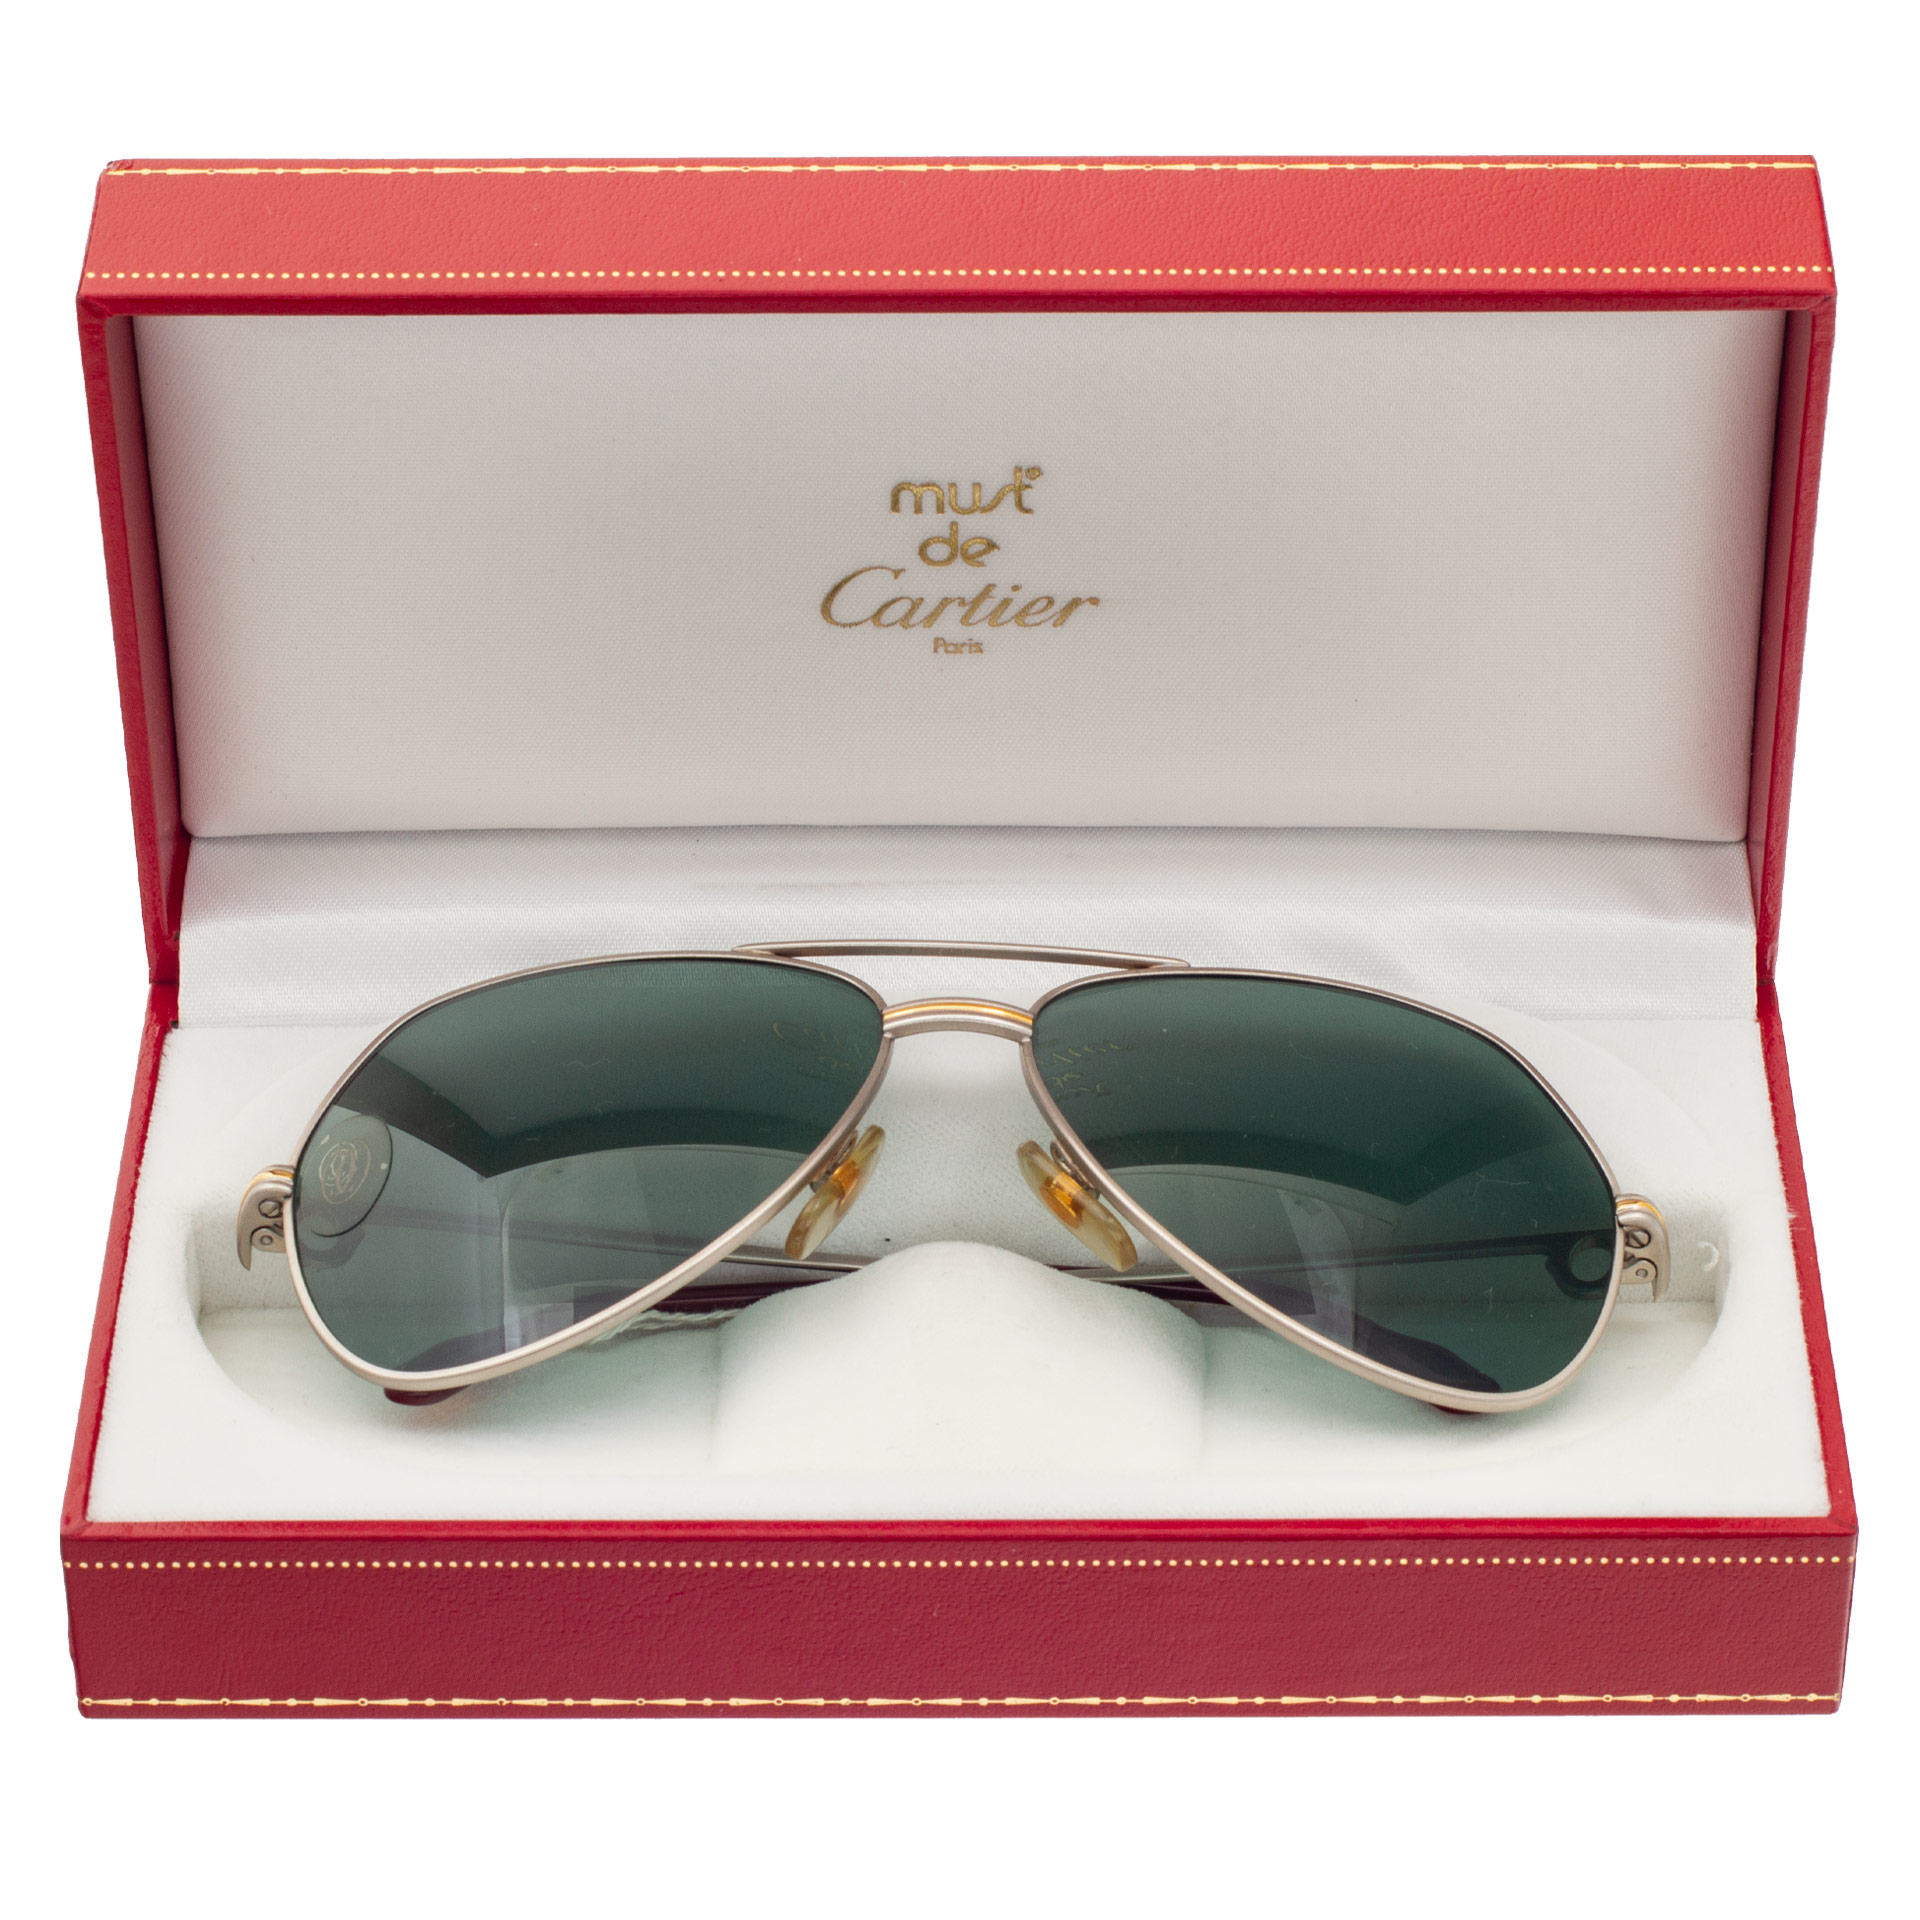 Cartier Vendome Louis sunglasses image 2